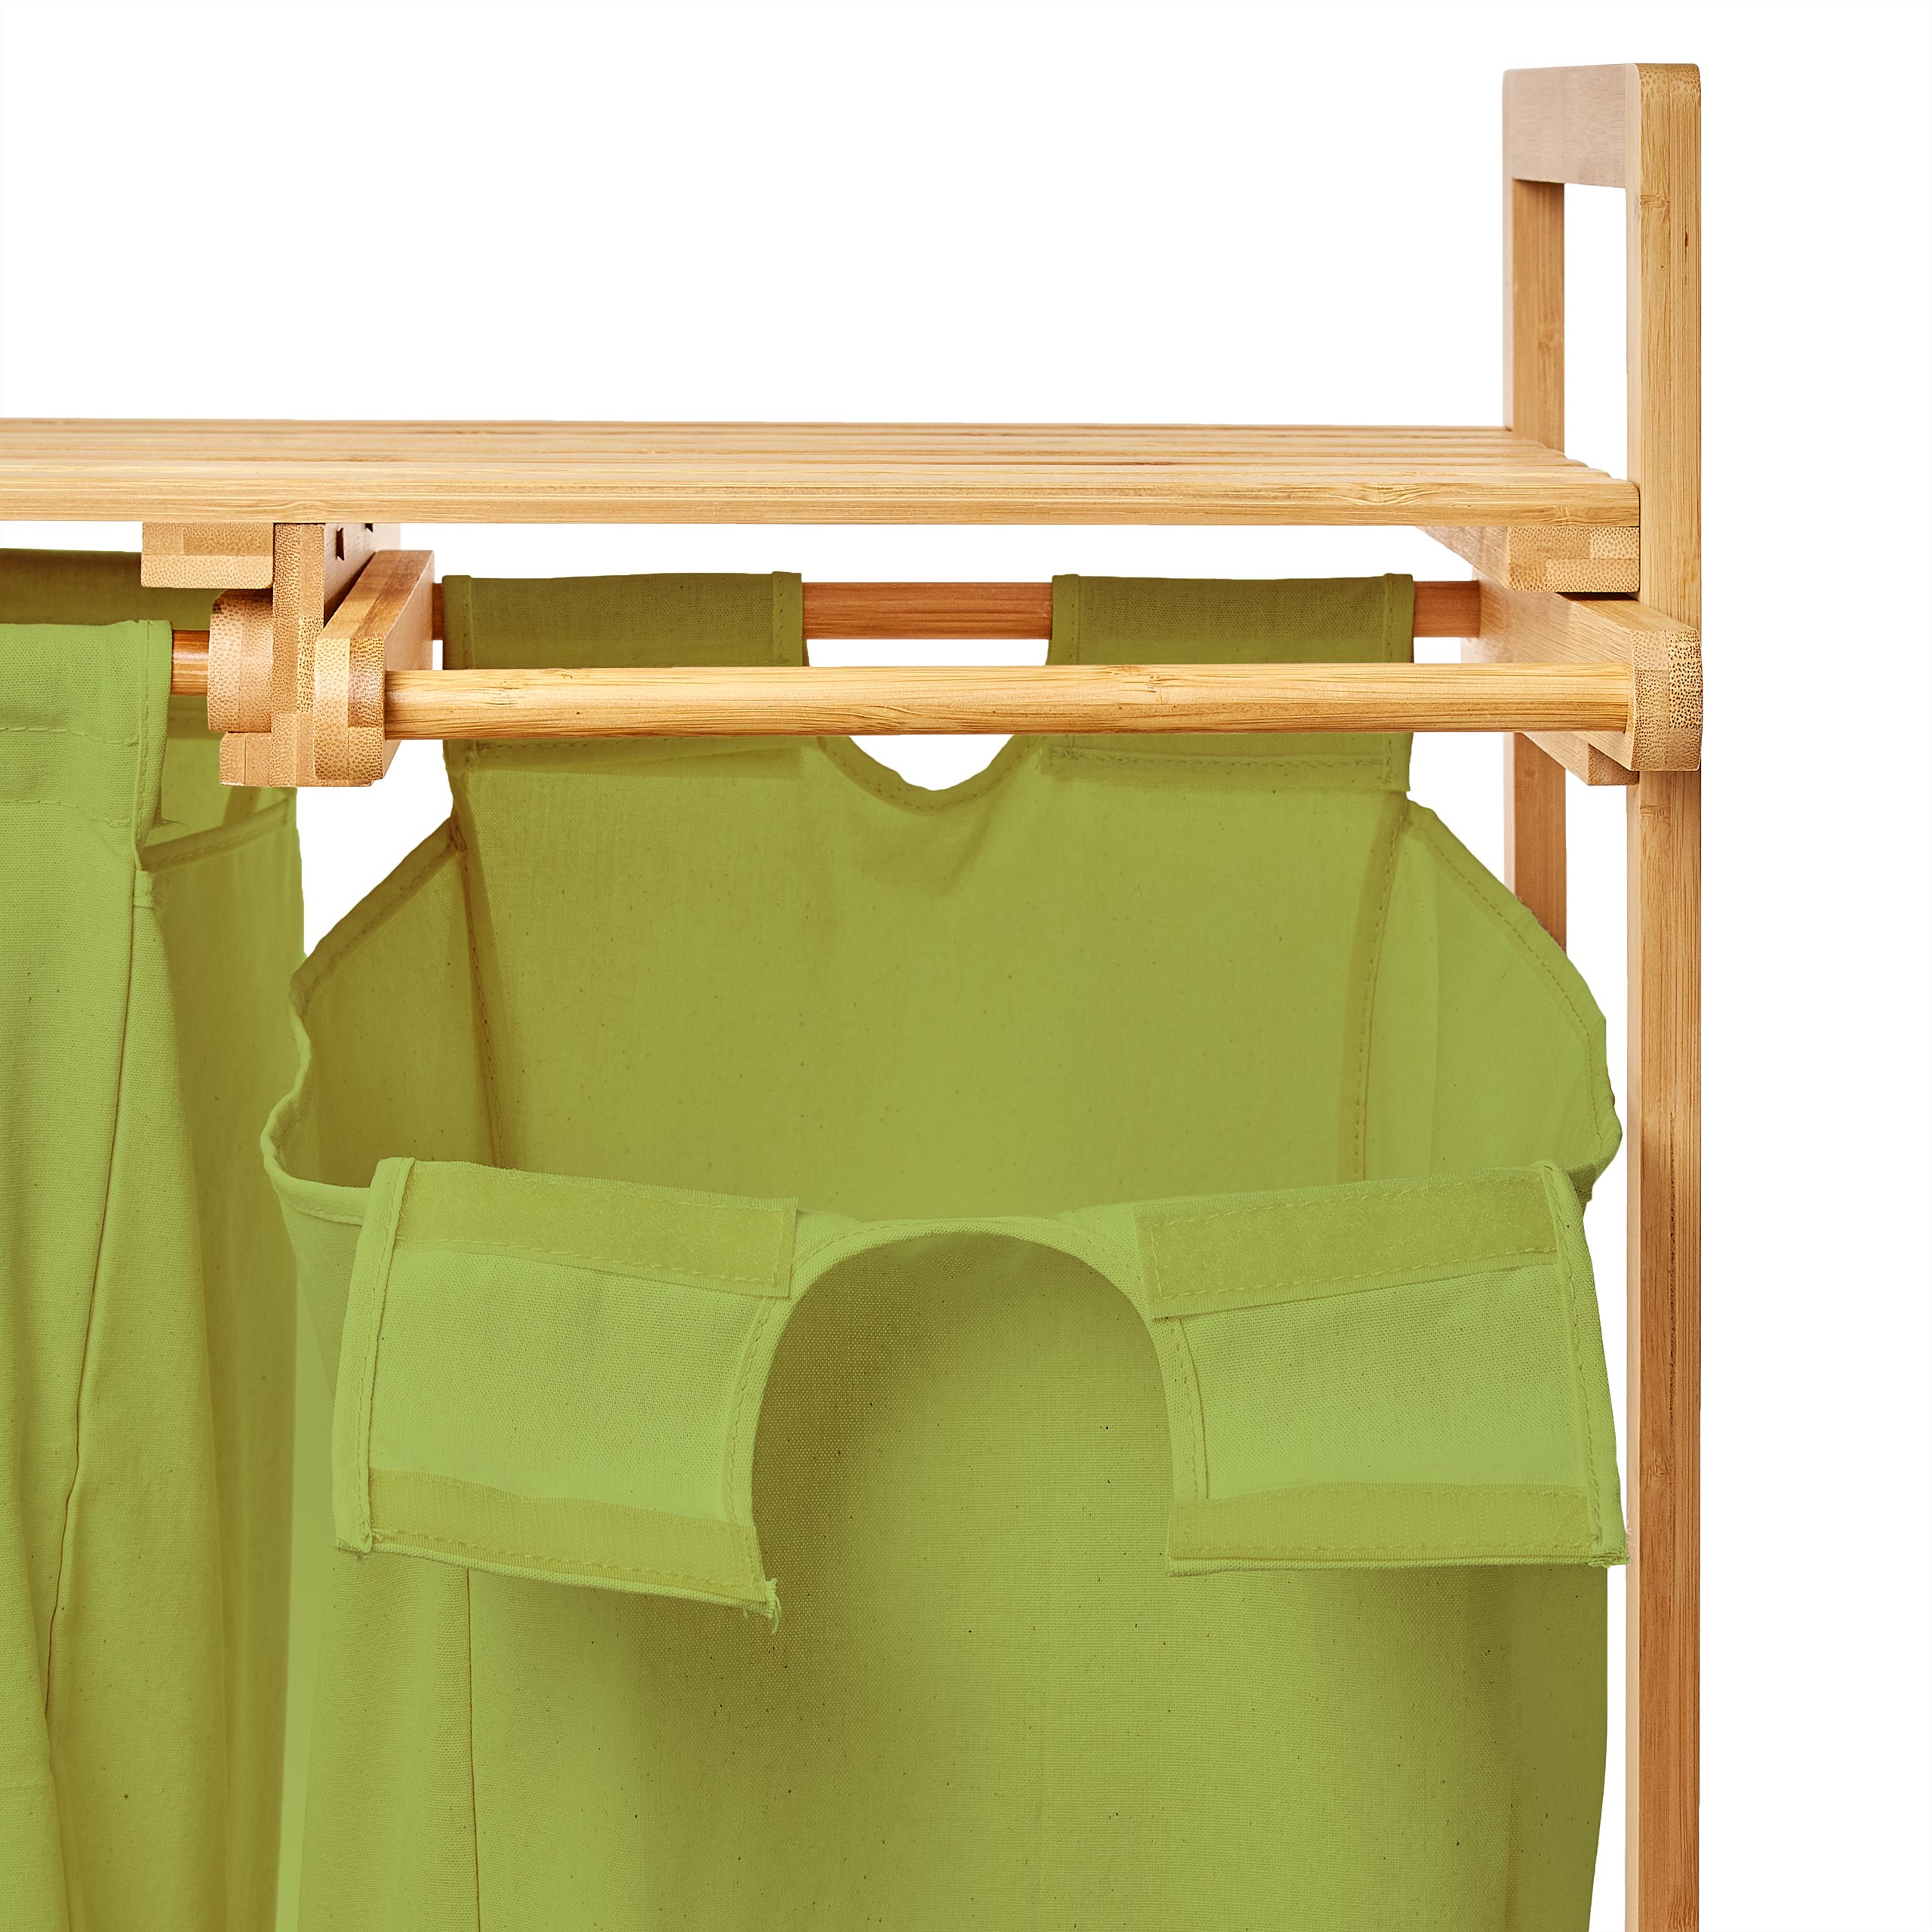 Wäschekorb aus Bambus mit 2 ausziehbaren Wäschesäcken - Größe ca. 73 cm Höhe x 64 cm Breite x 33 cm Tiefe - Farbe Grün